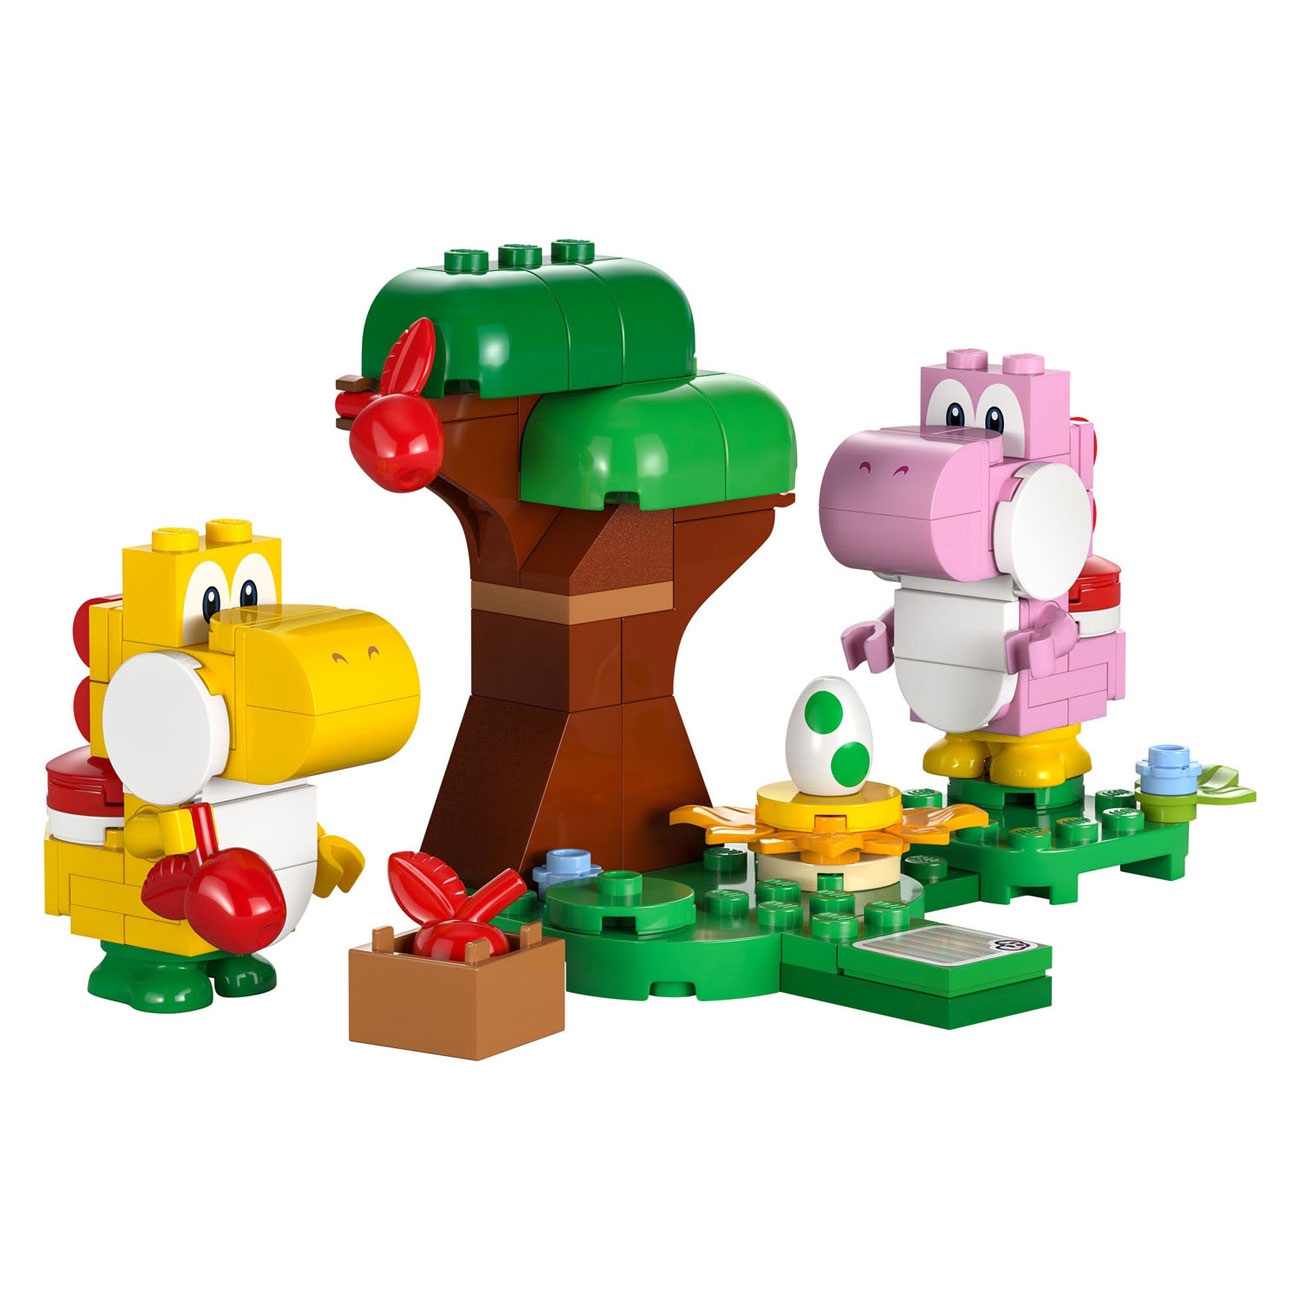 LEGO Super Mario 71428 Ensemble d'extension : La forêt particulière de Yoshi